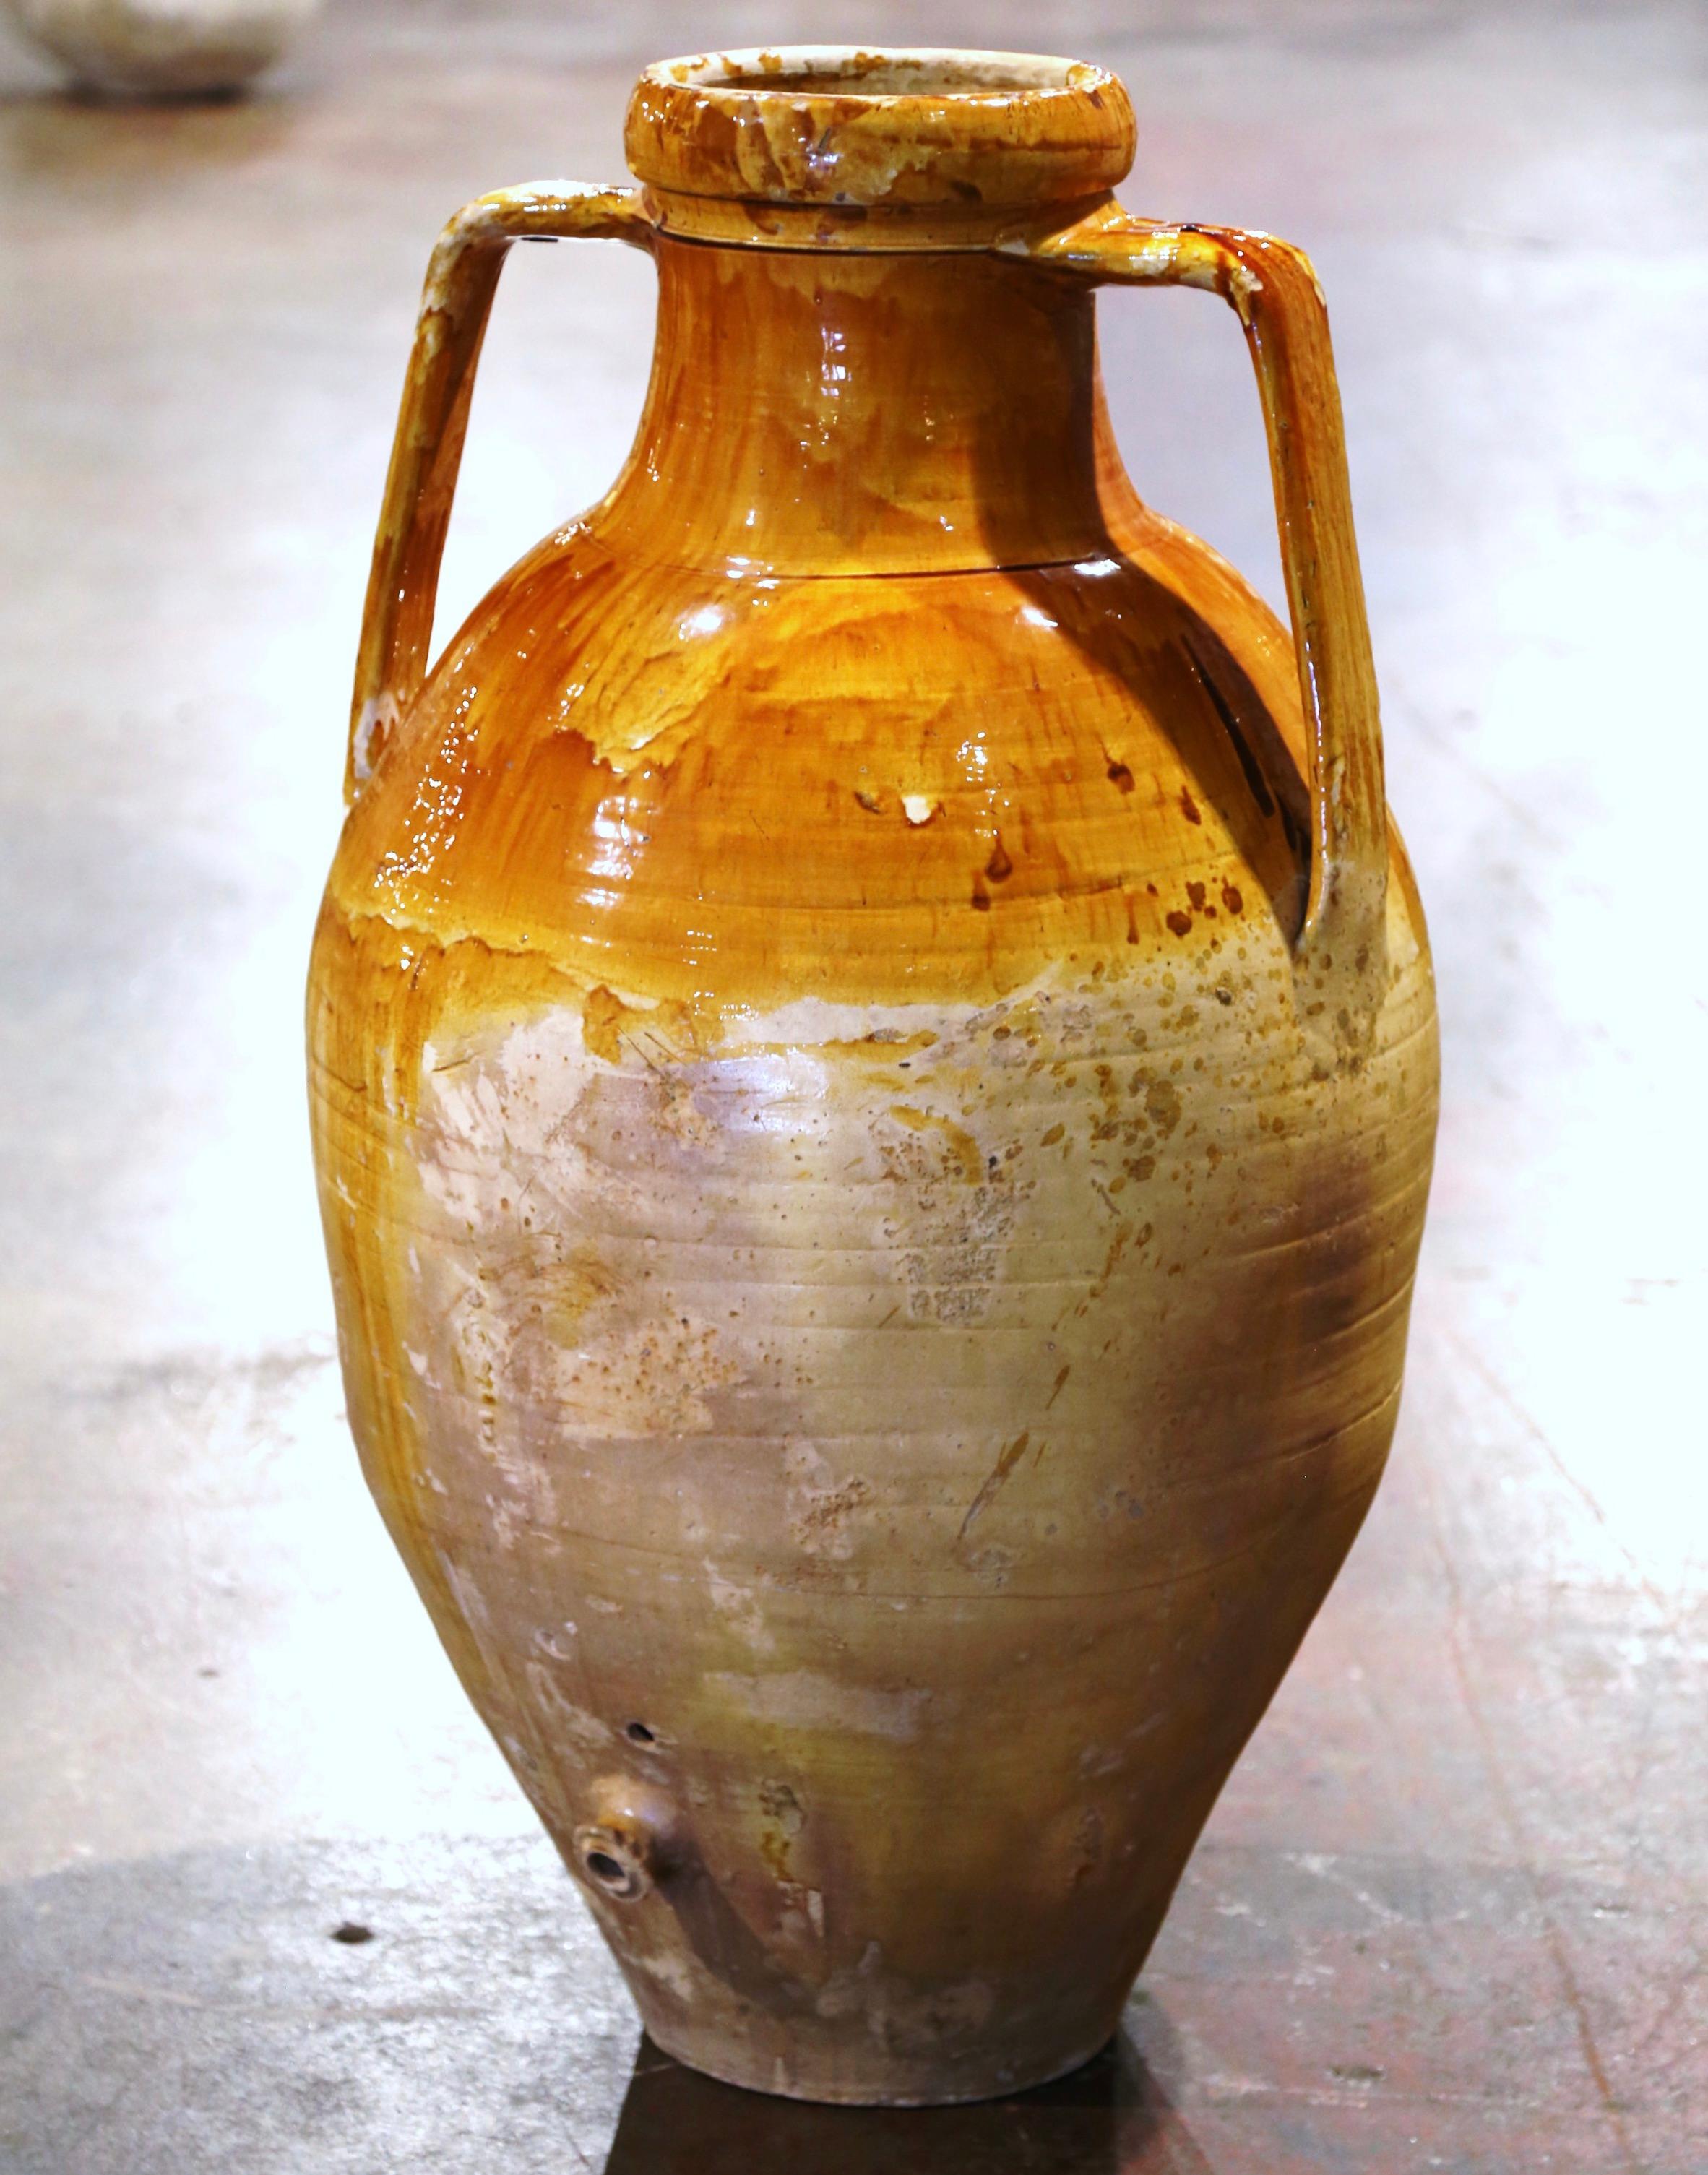 Ajoutez une touche méditerranéenne à vos espaces intérieurs ou extérieurs avec cette élégante Amphora antique en terre cuite. Fabriquée dans le sud de l'Italie vers 1860, cette grande urne a une forme ronde traditionnelle sur un long col ; elle est